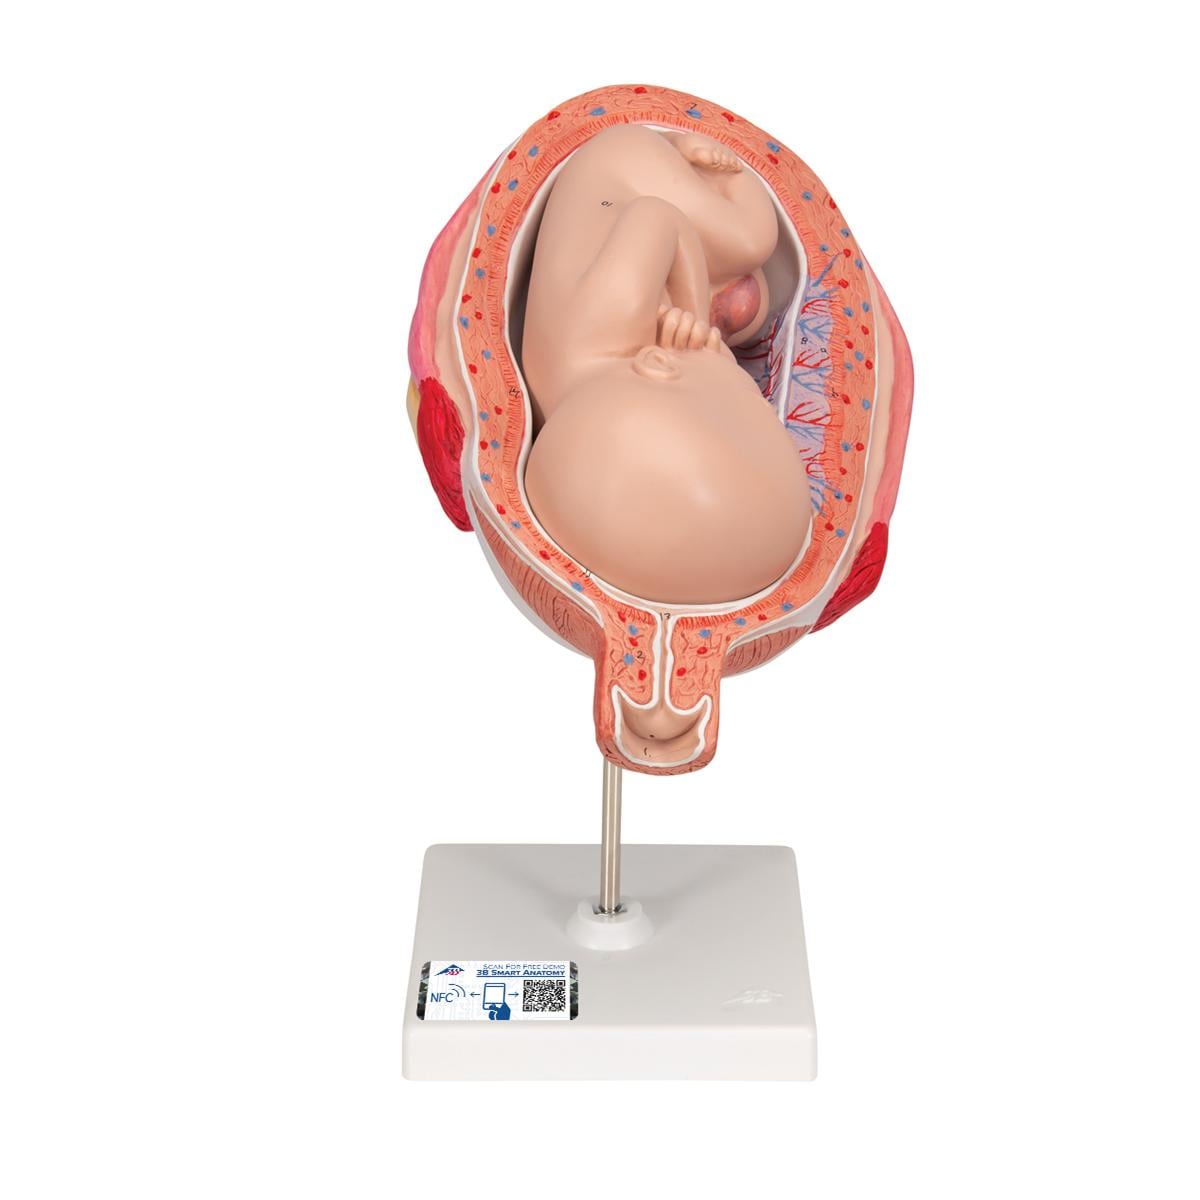 Anatomisch model foetus 7 maanden - per stuk